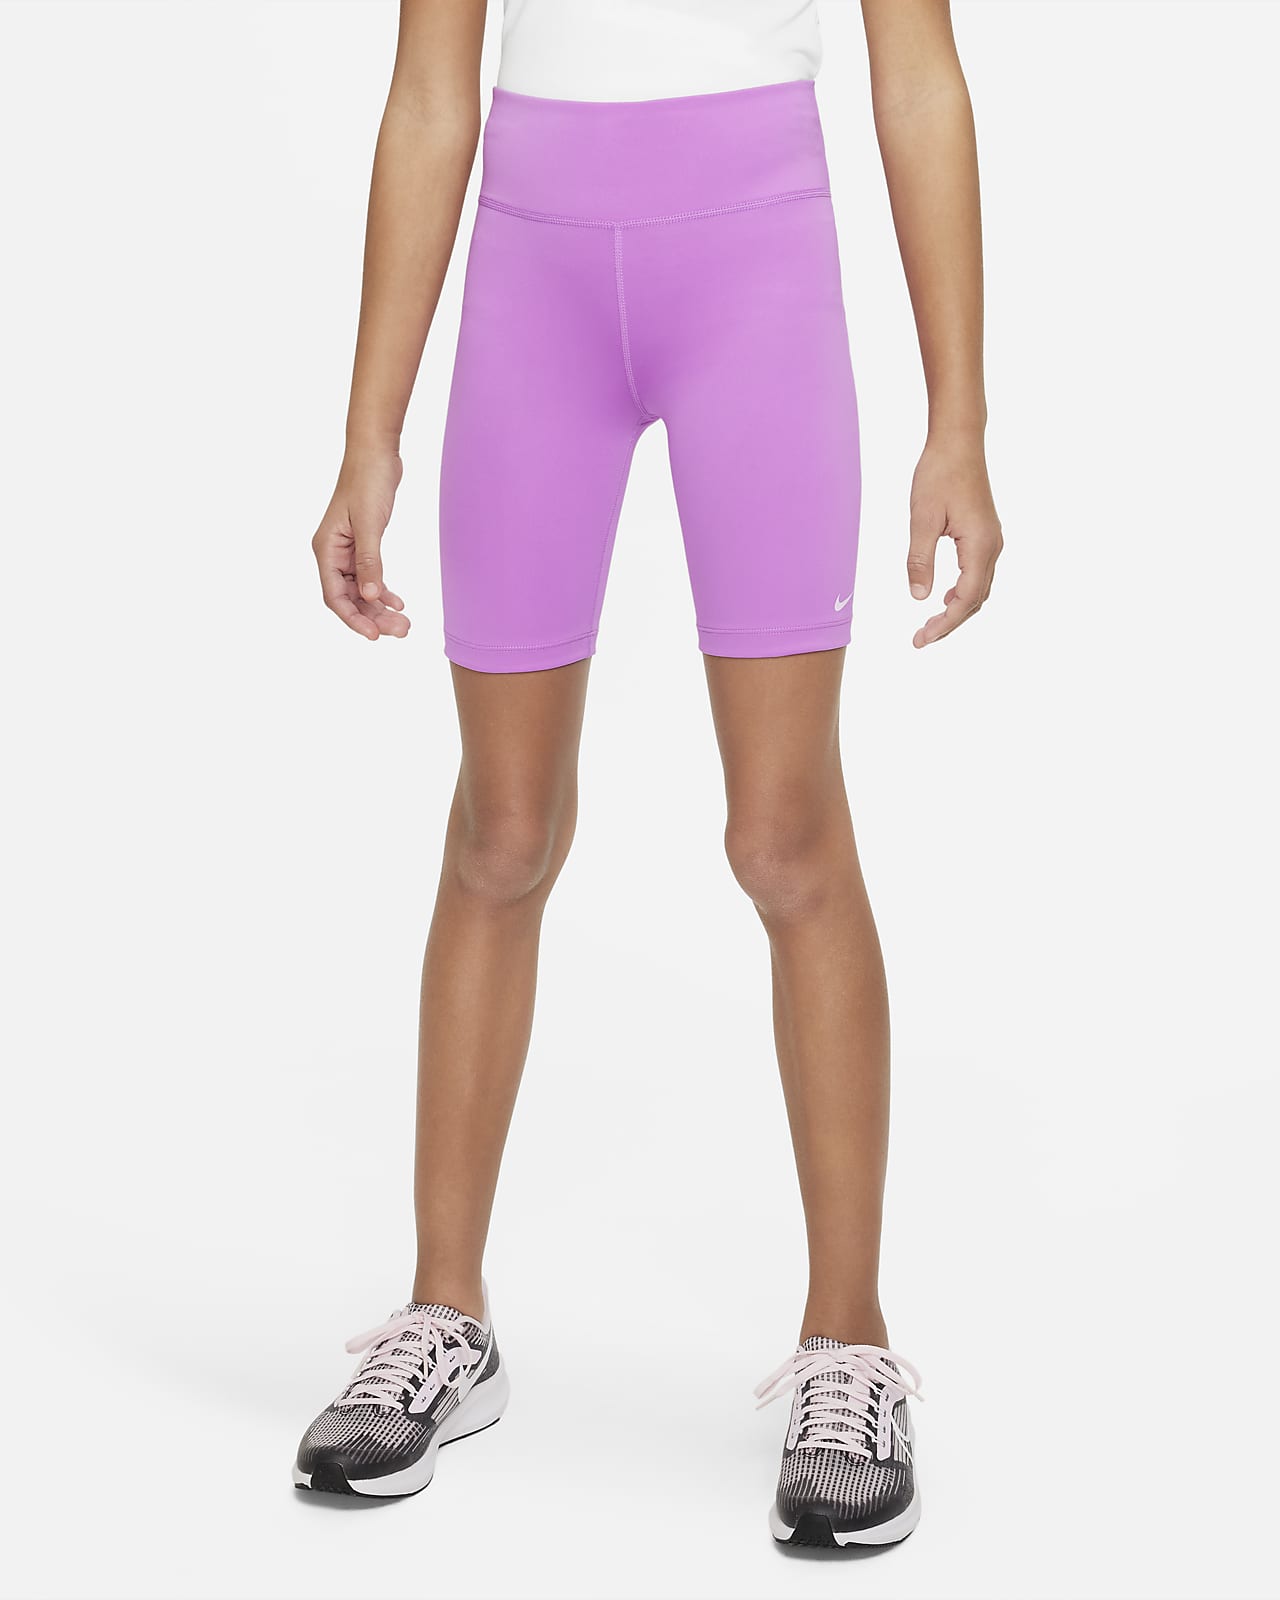 Women's Cycling Clothing. Nike SG